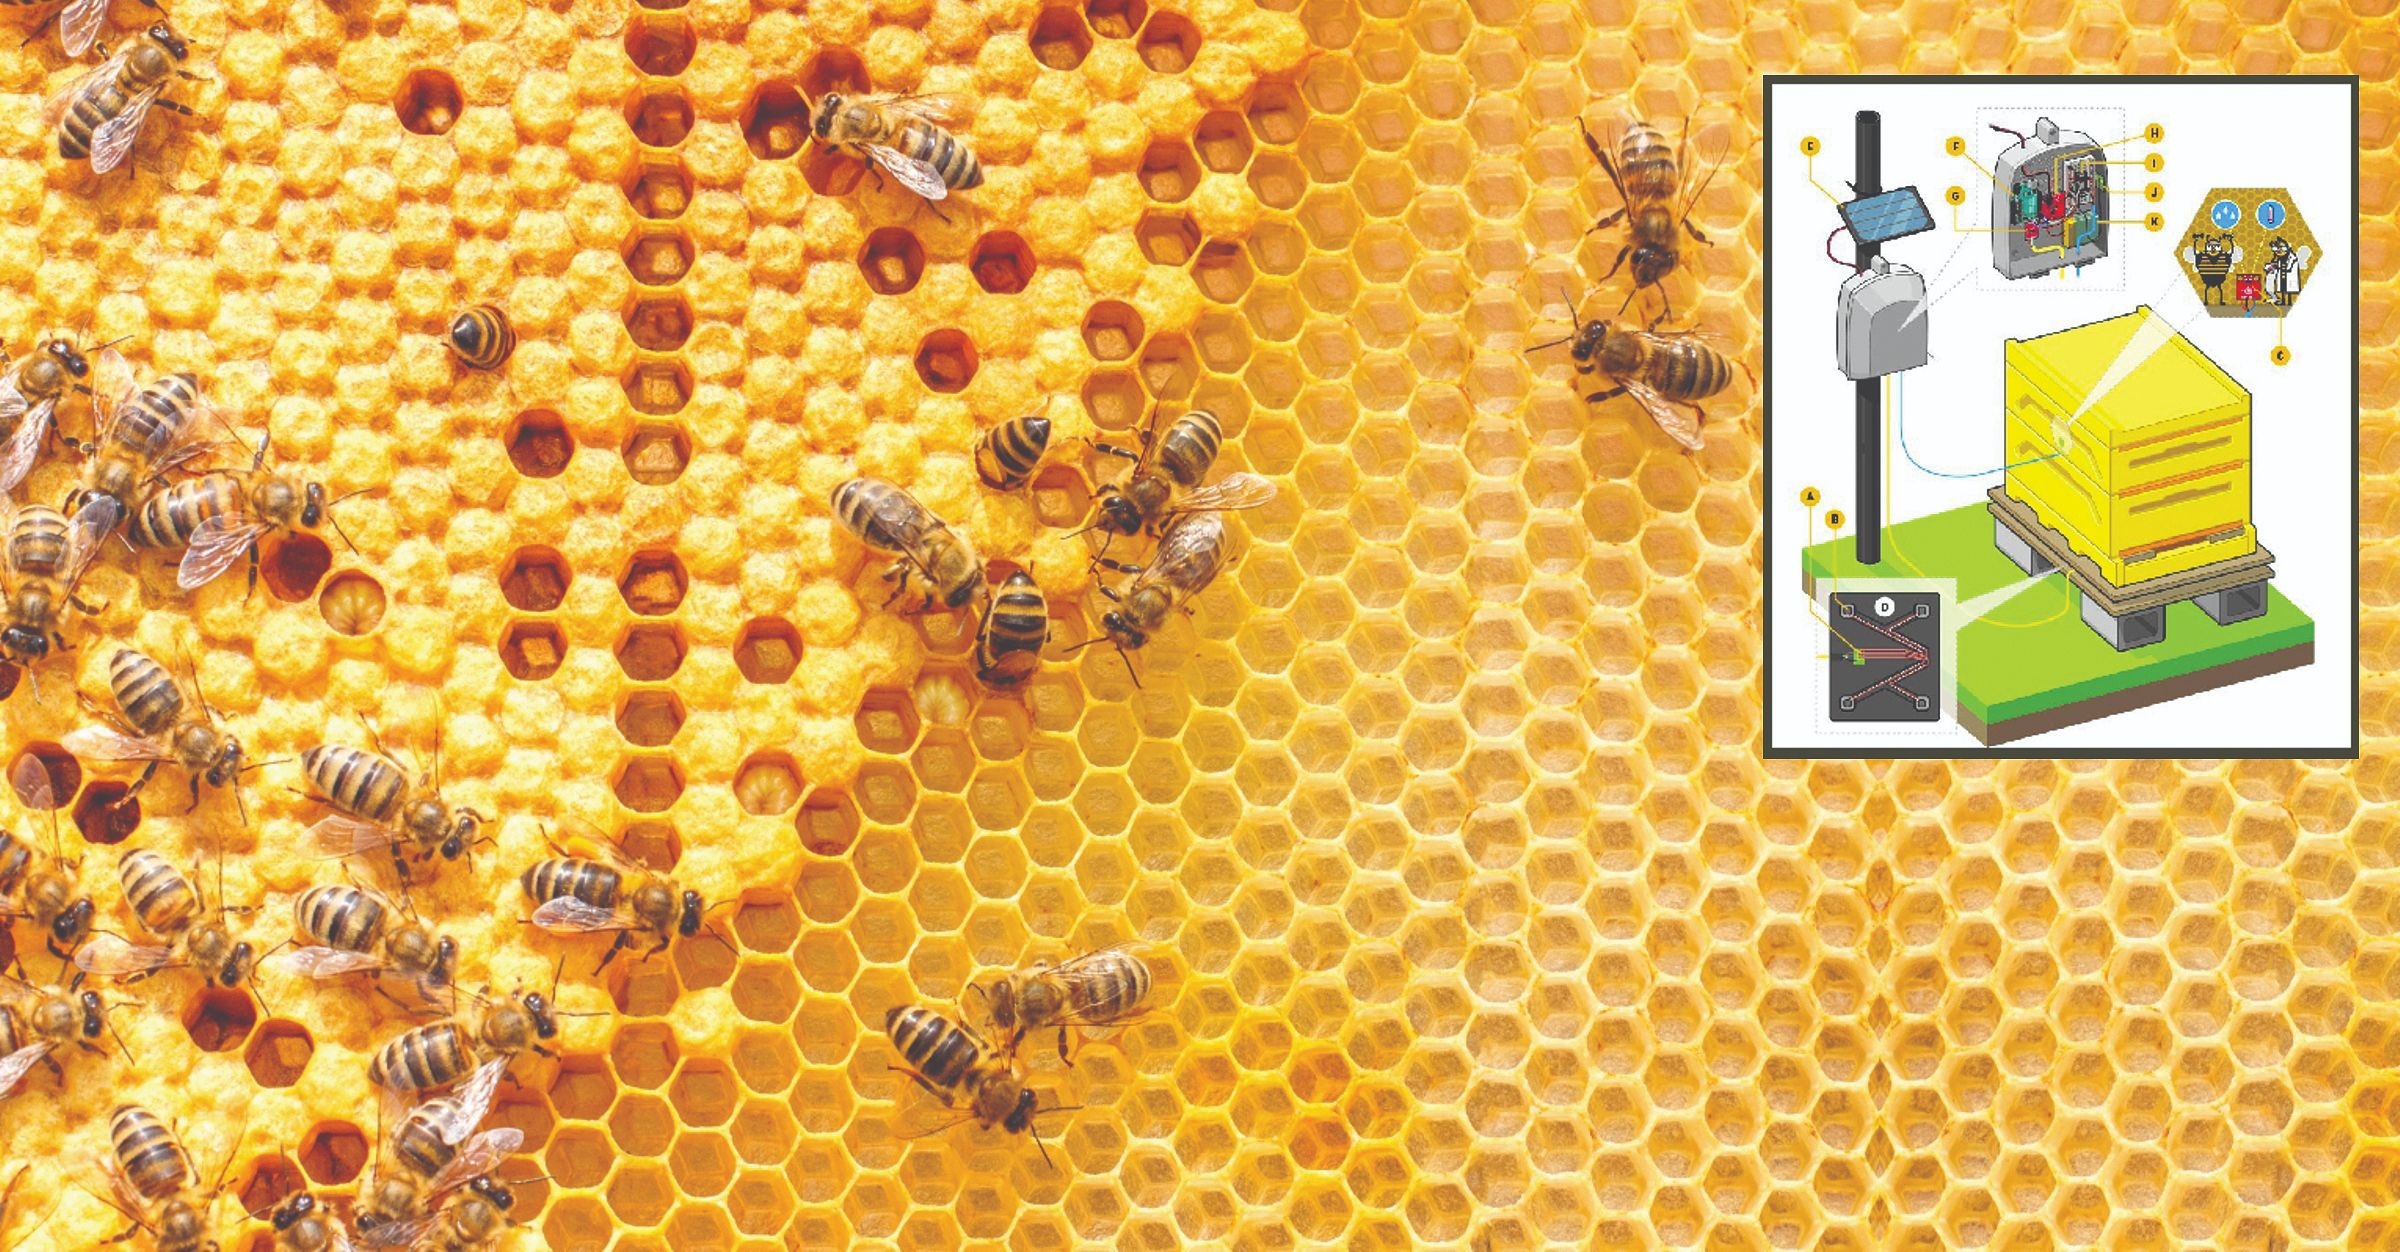 Novi način praćenja zdravlja pčela